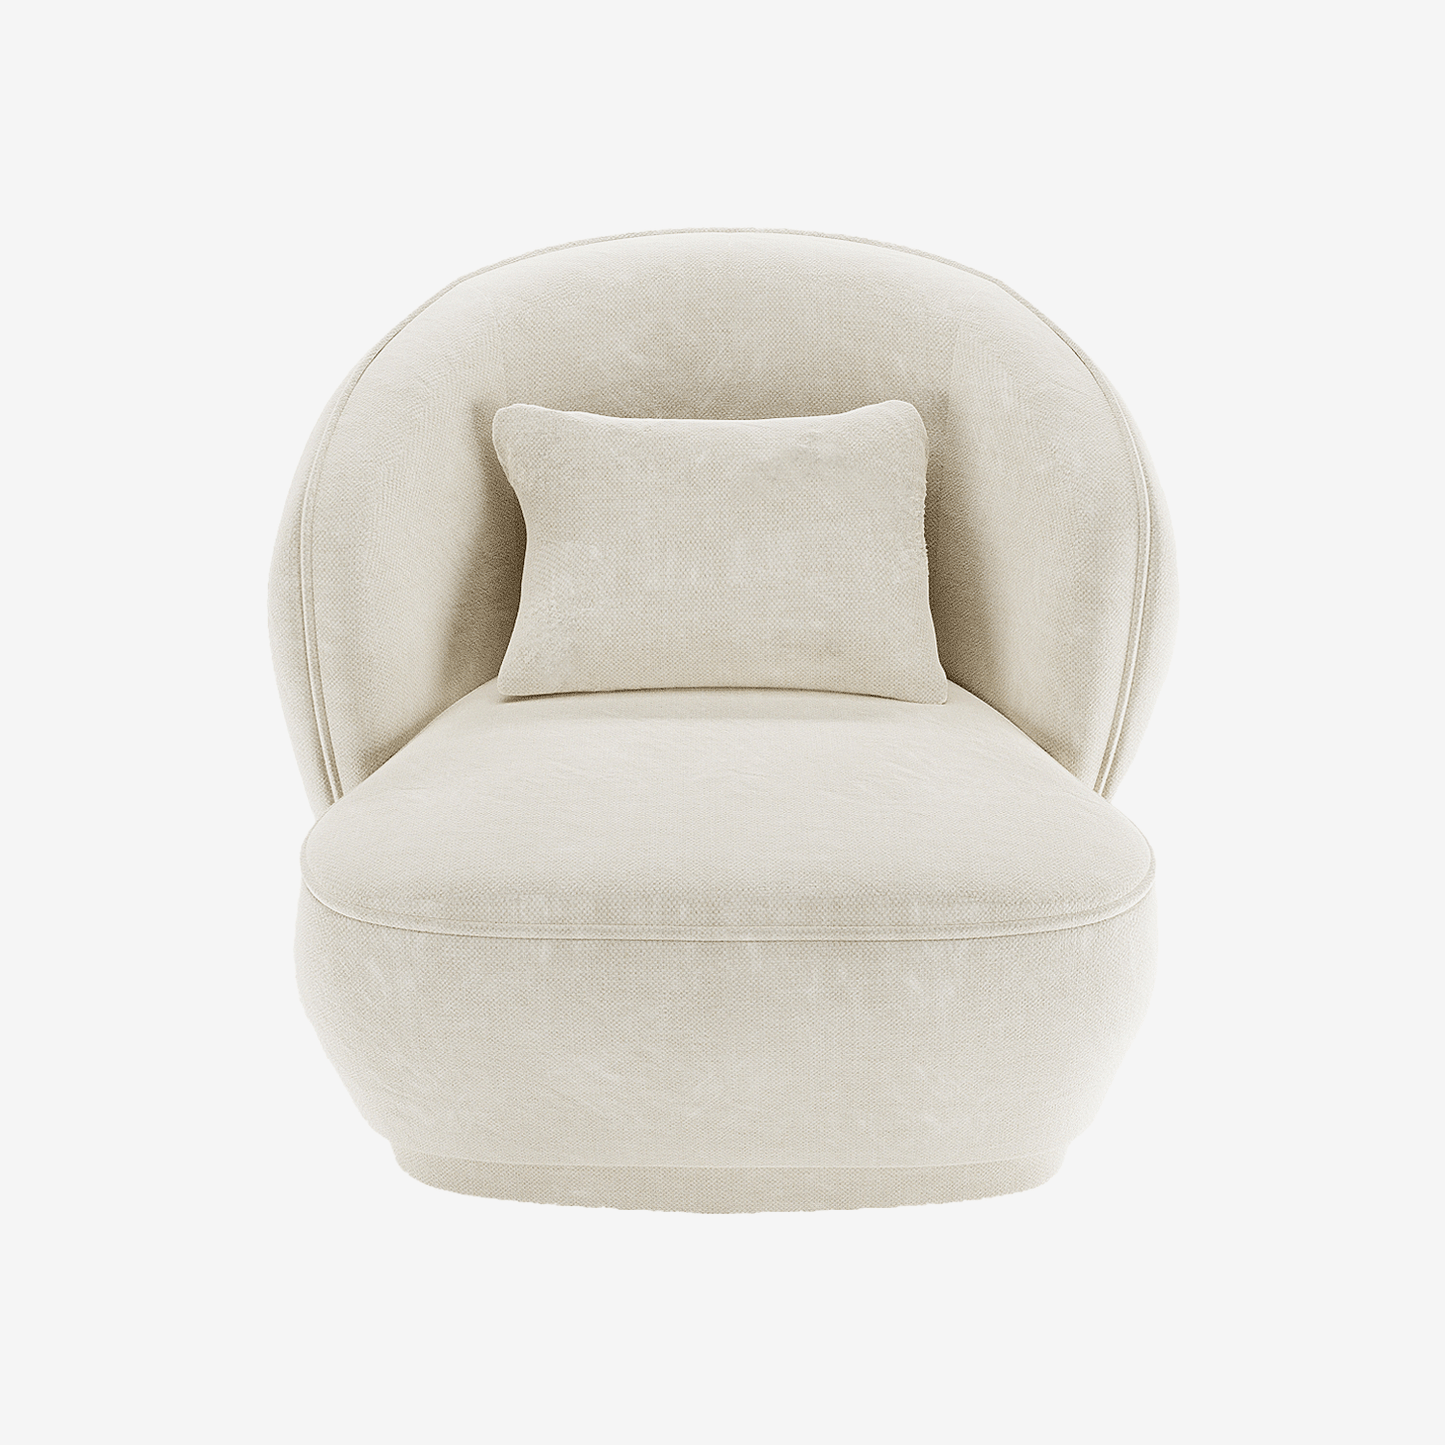 Fauteuil design minimaliste en velours vintage crème - Potiron Paris, la satisfaction du fauteuil design et confortable pas cher